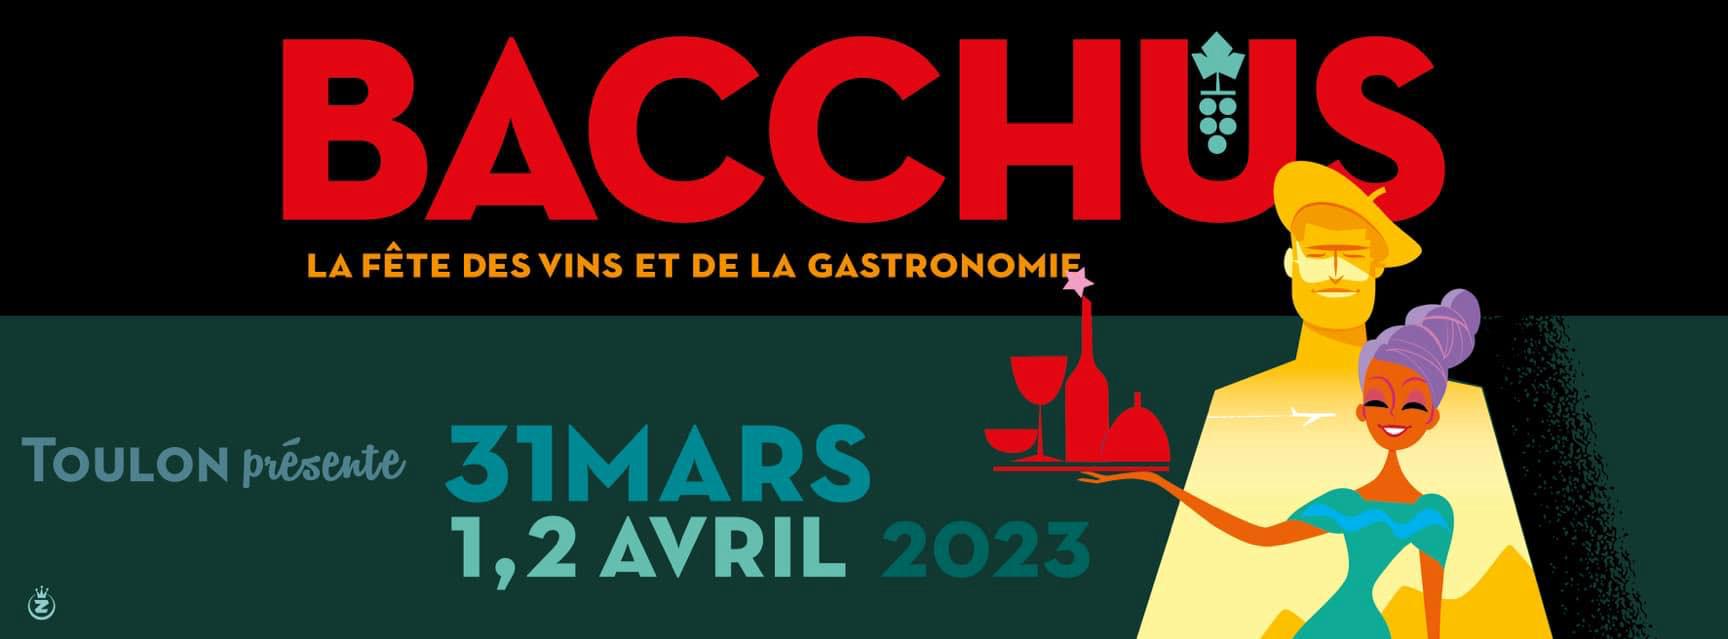 Bacchus 2023 - La fête du vin à Toulon